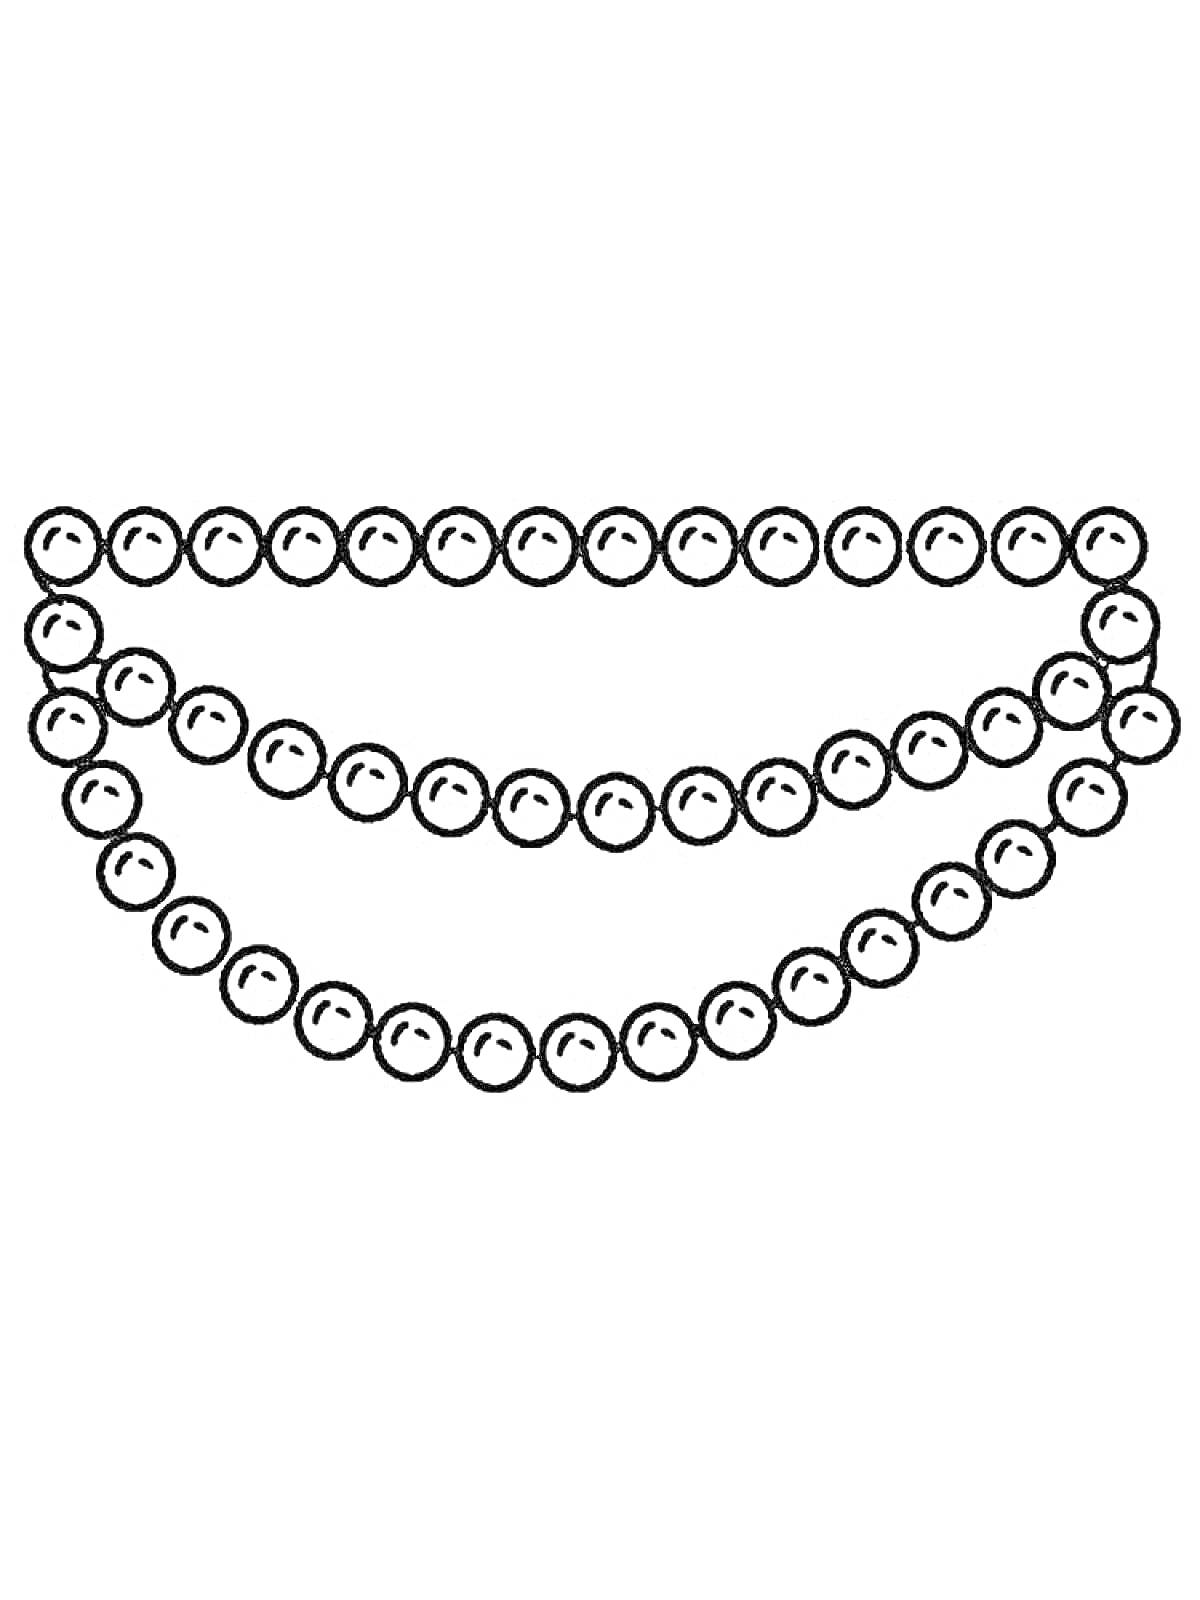 Раскраска три ряда бусинок в форме ожерелья